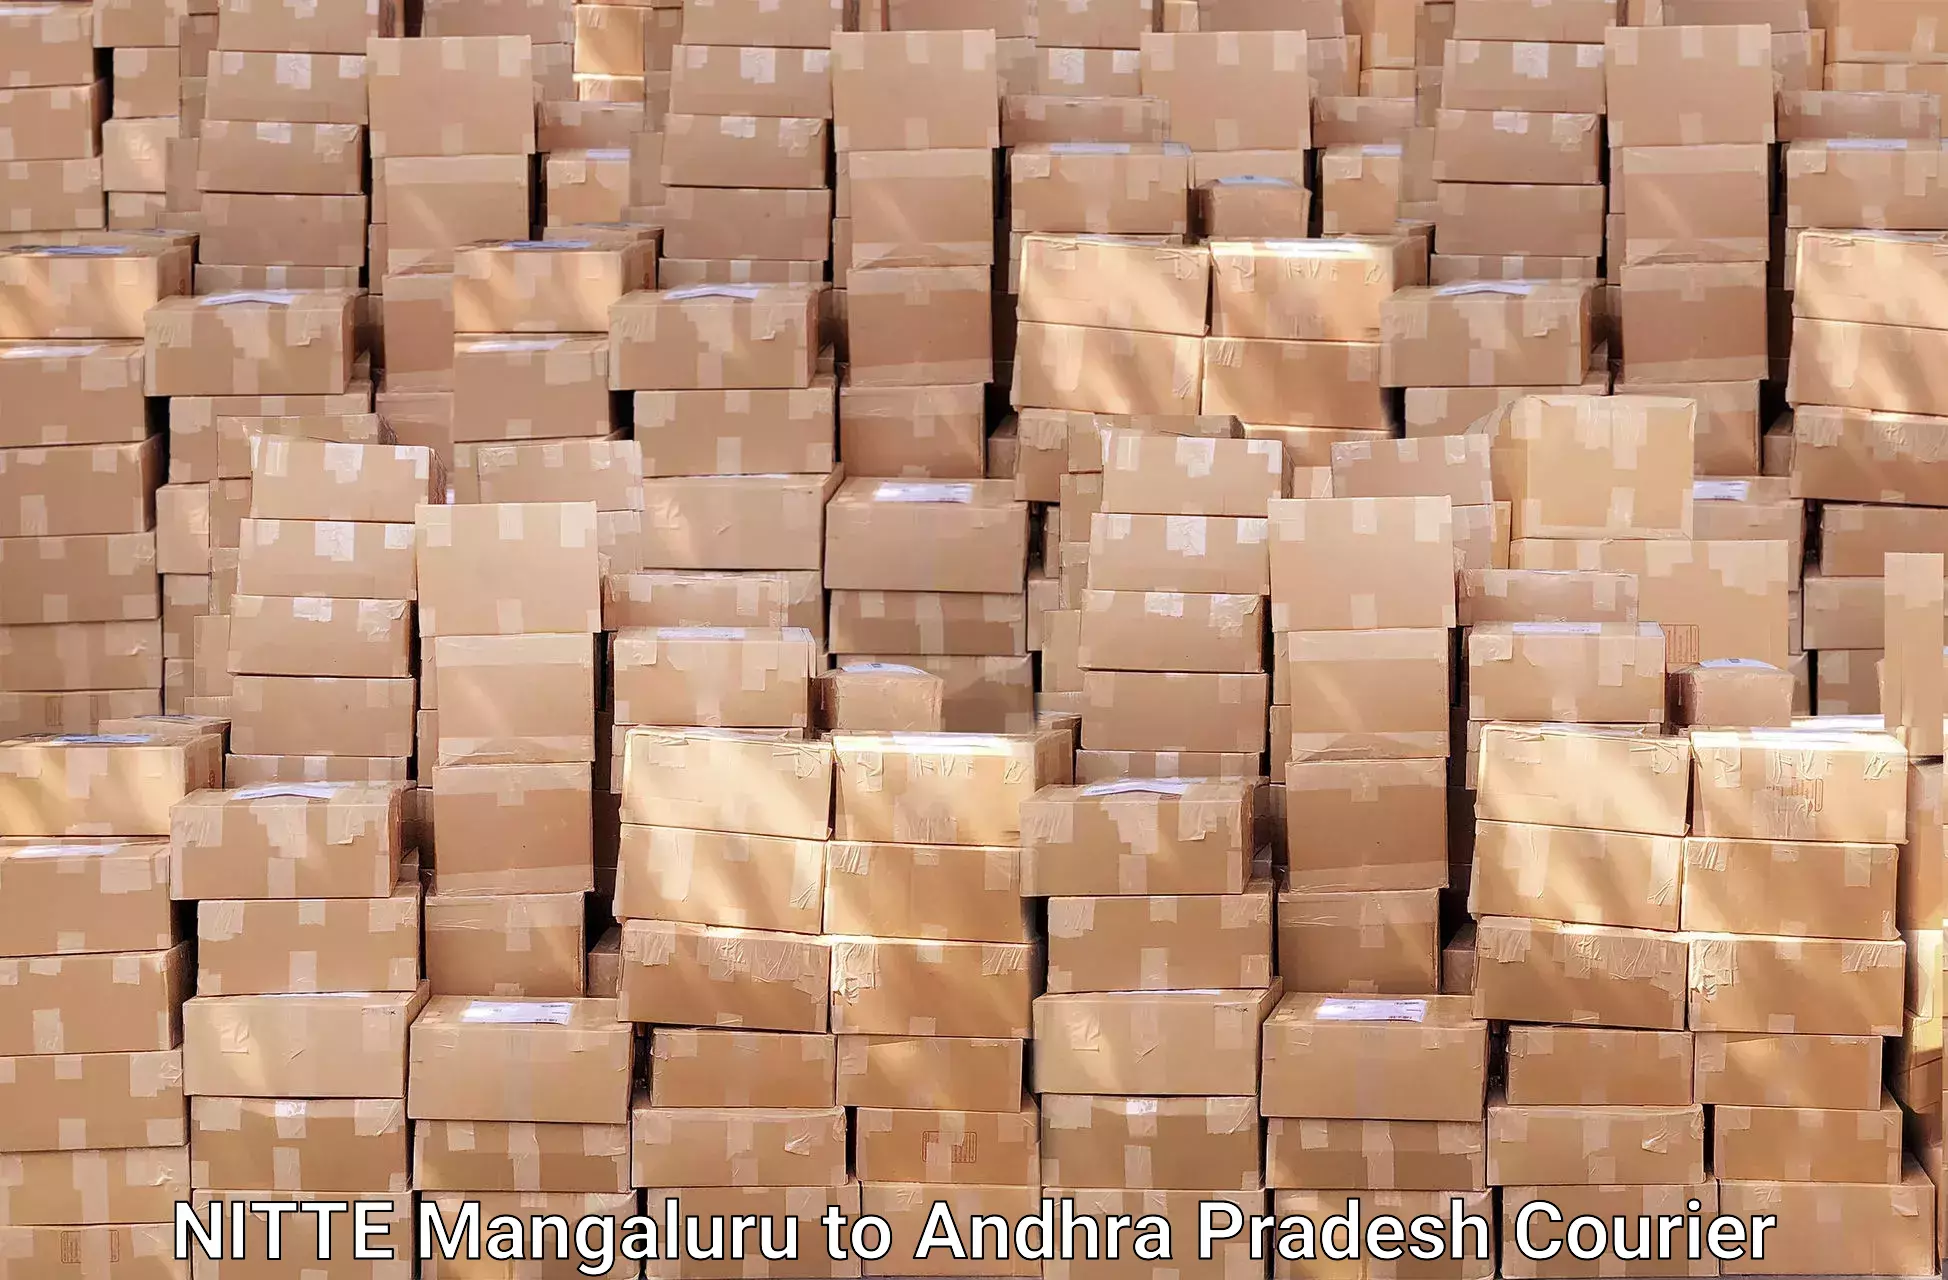 Nationwide furniture transport NITTE Mangaluru to Andhra Pradesh